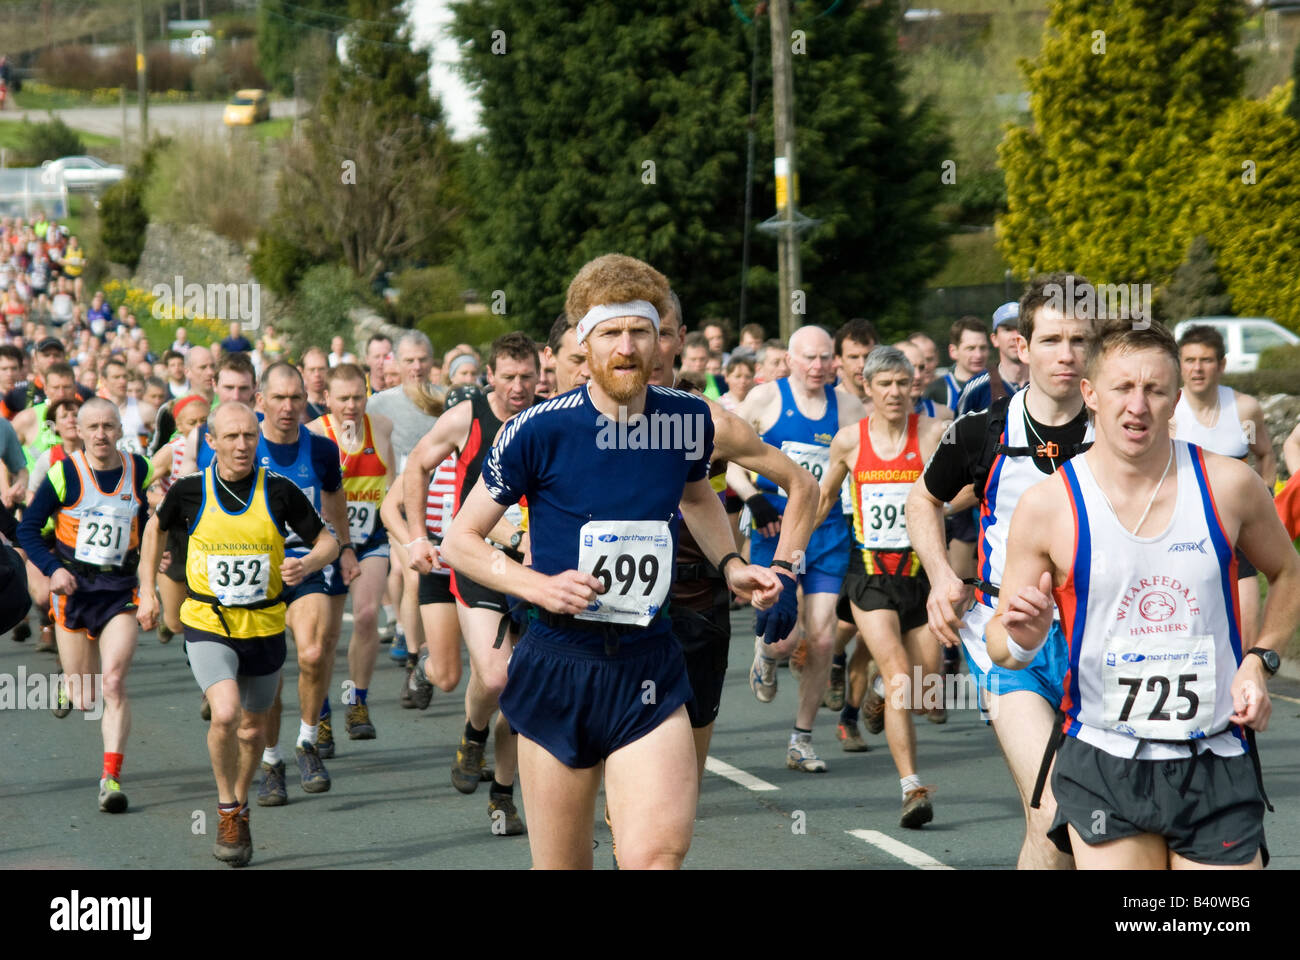 Las personas que compiten en los tres picos desafío de carrera de larga distancia en Yorkshire, Inglaterra Foto de stock